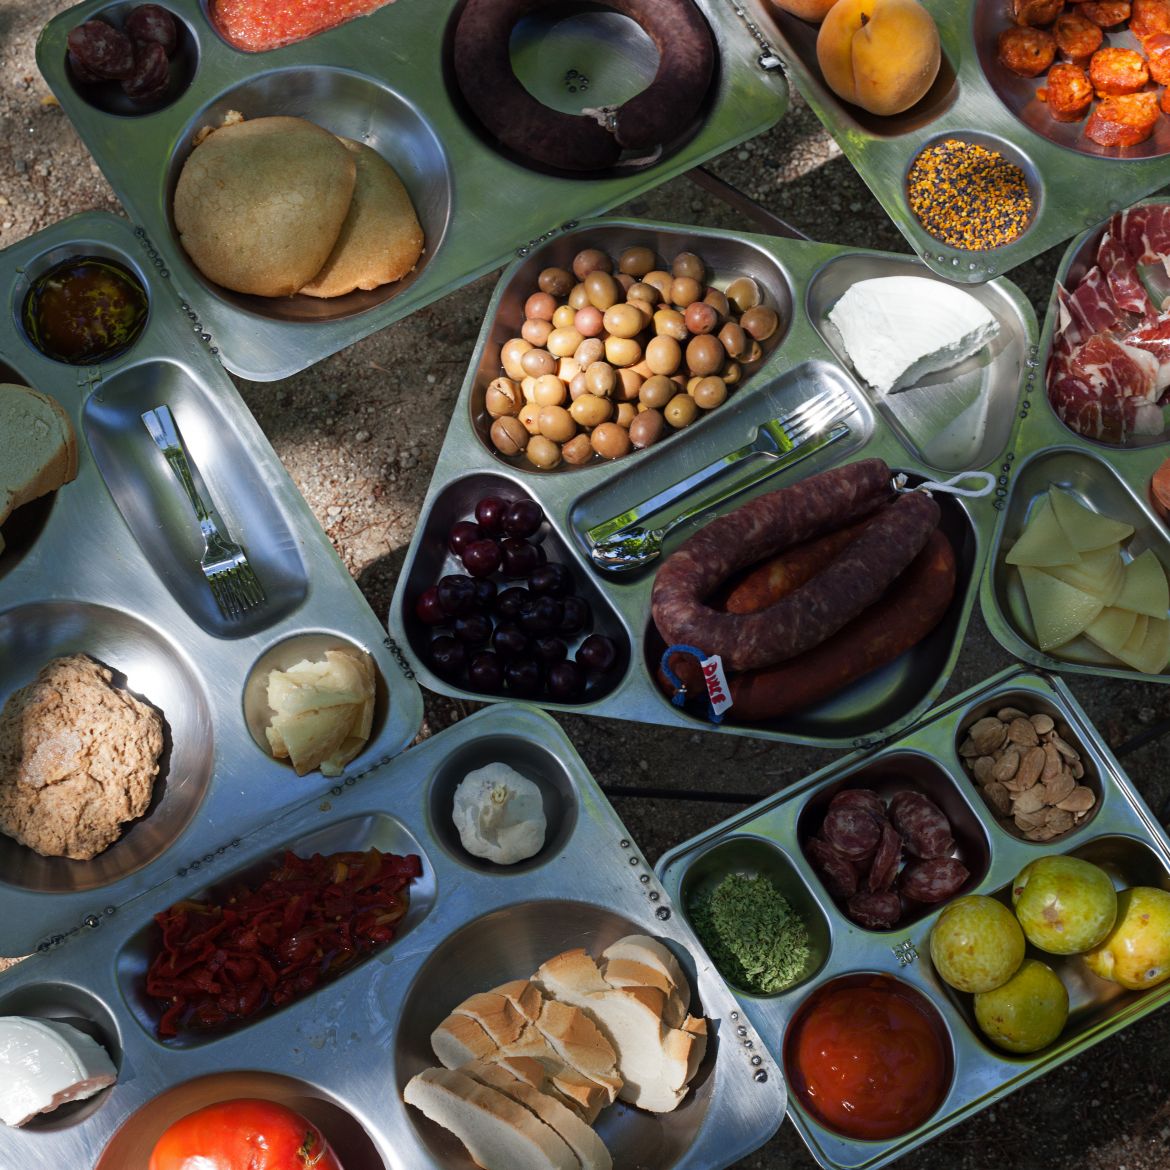 Bandejas metálicas llenas de comida: Pan, queso, cabeza de ajo, cubiertos, aceitunas, tomate, melocotón, embutido